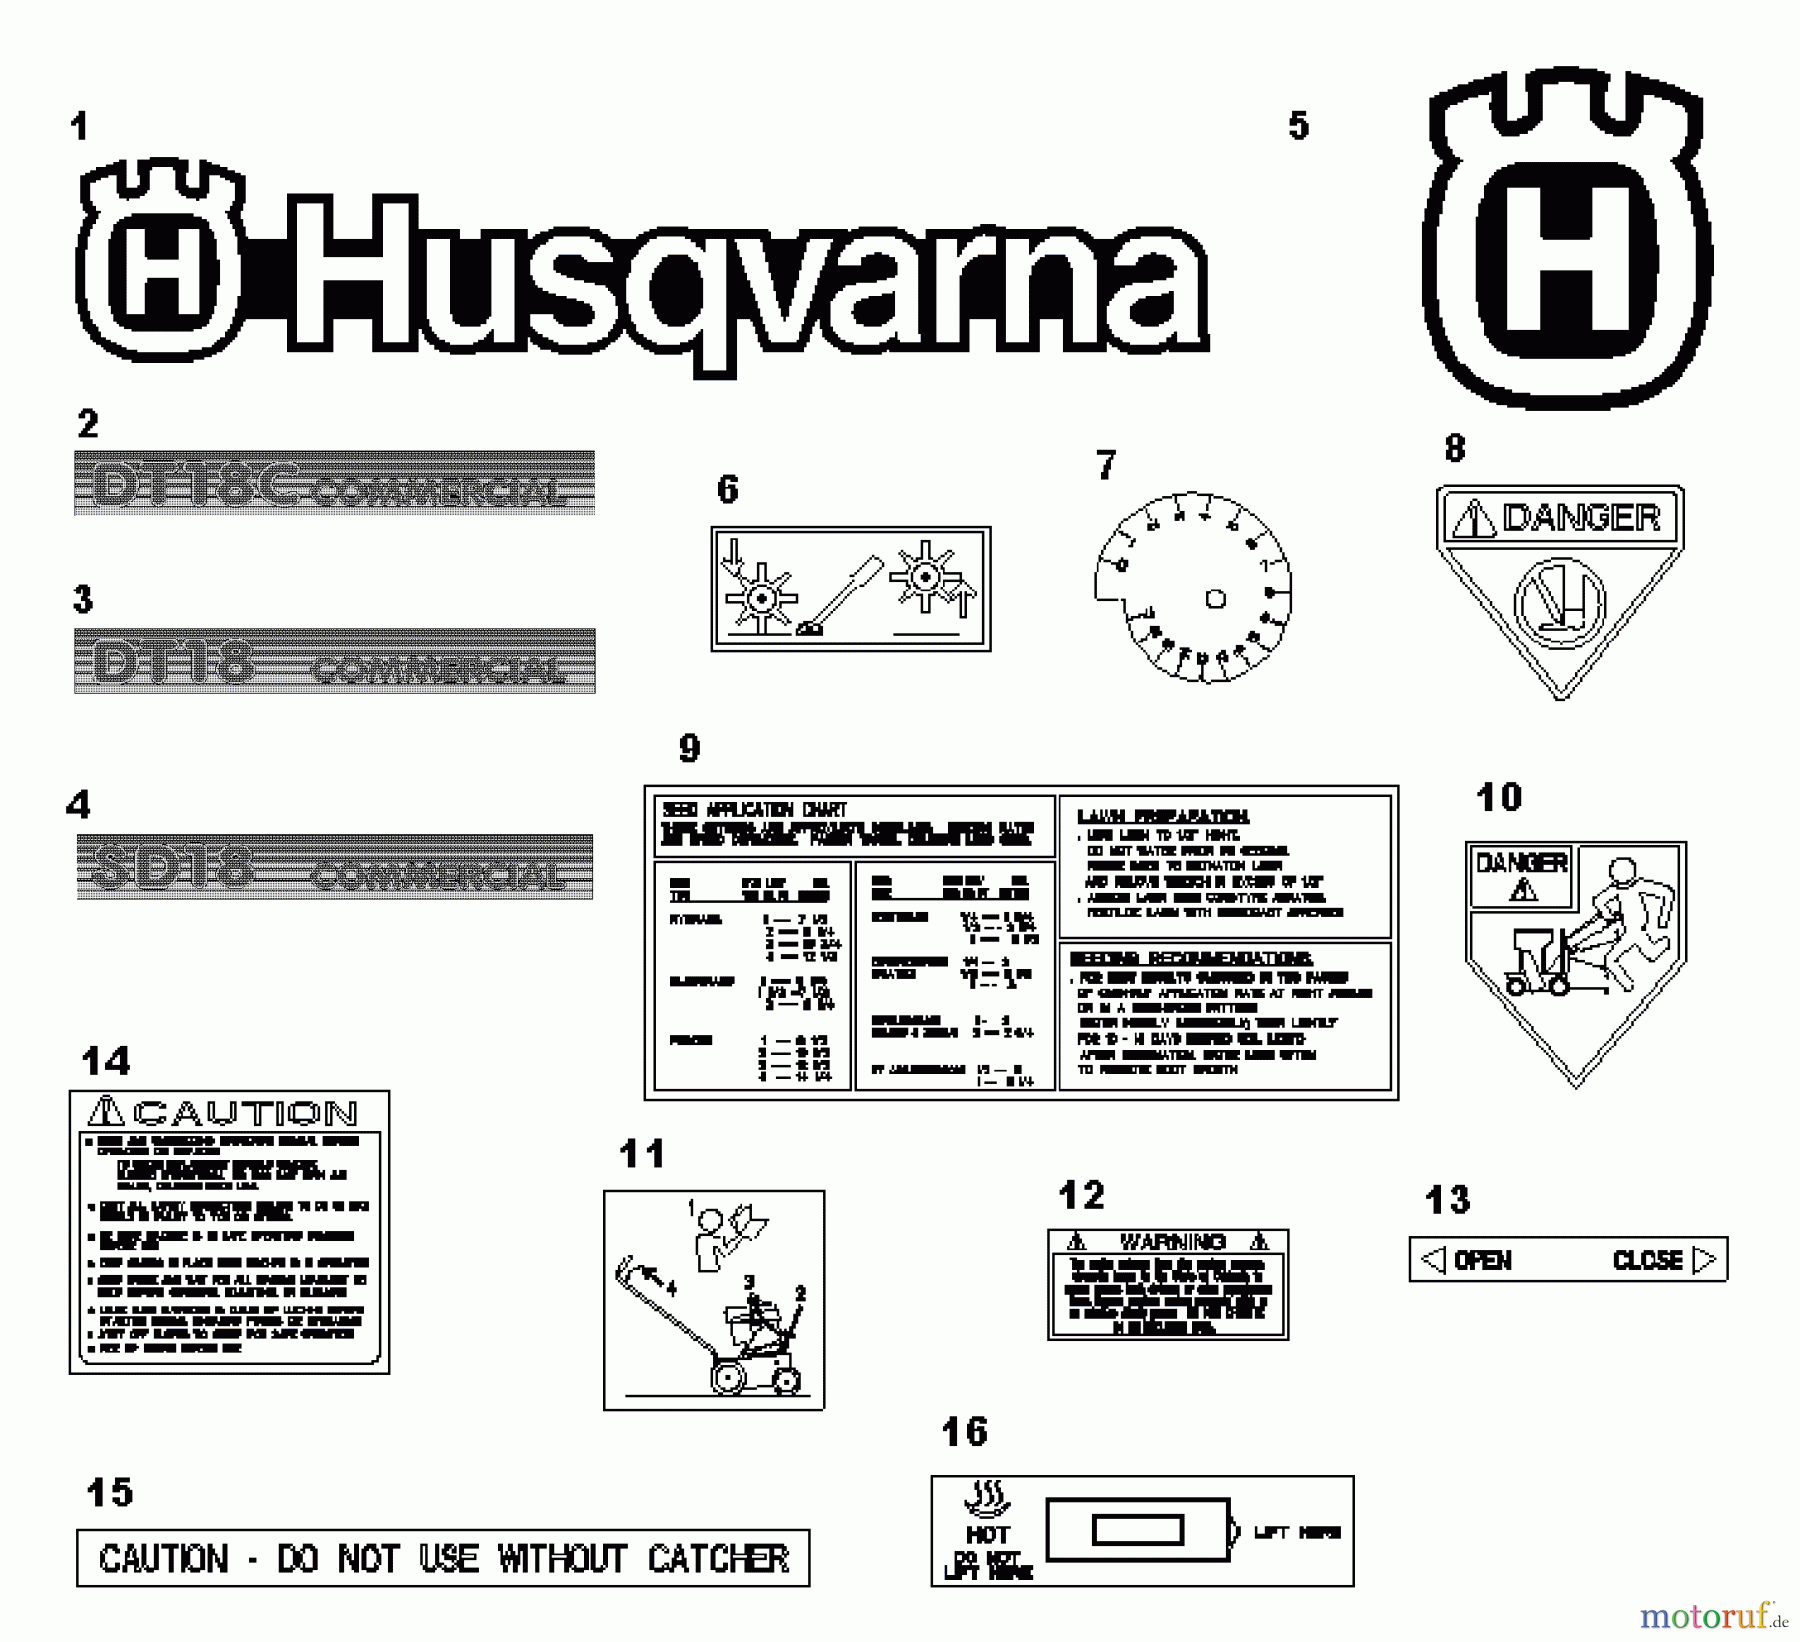  Husqvarna Belüfter / Vertikutierer / Rechen DT 18 (968981007) - Husqvarna Dethatcher (2000-12 & After) Dethatcher / Seeder Decals